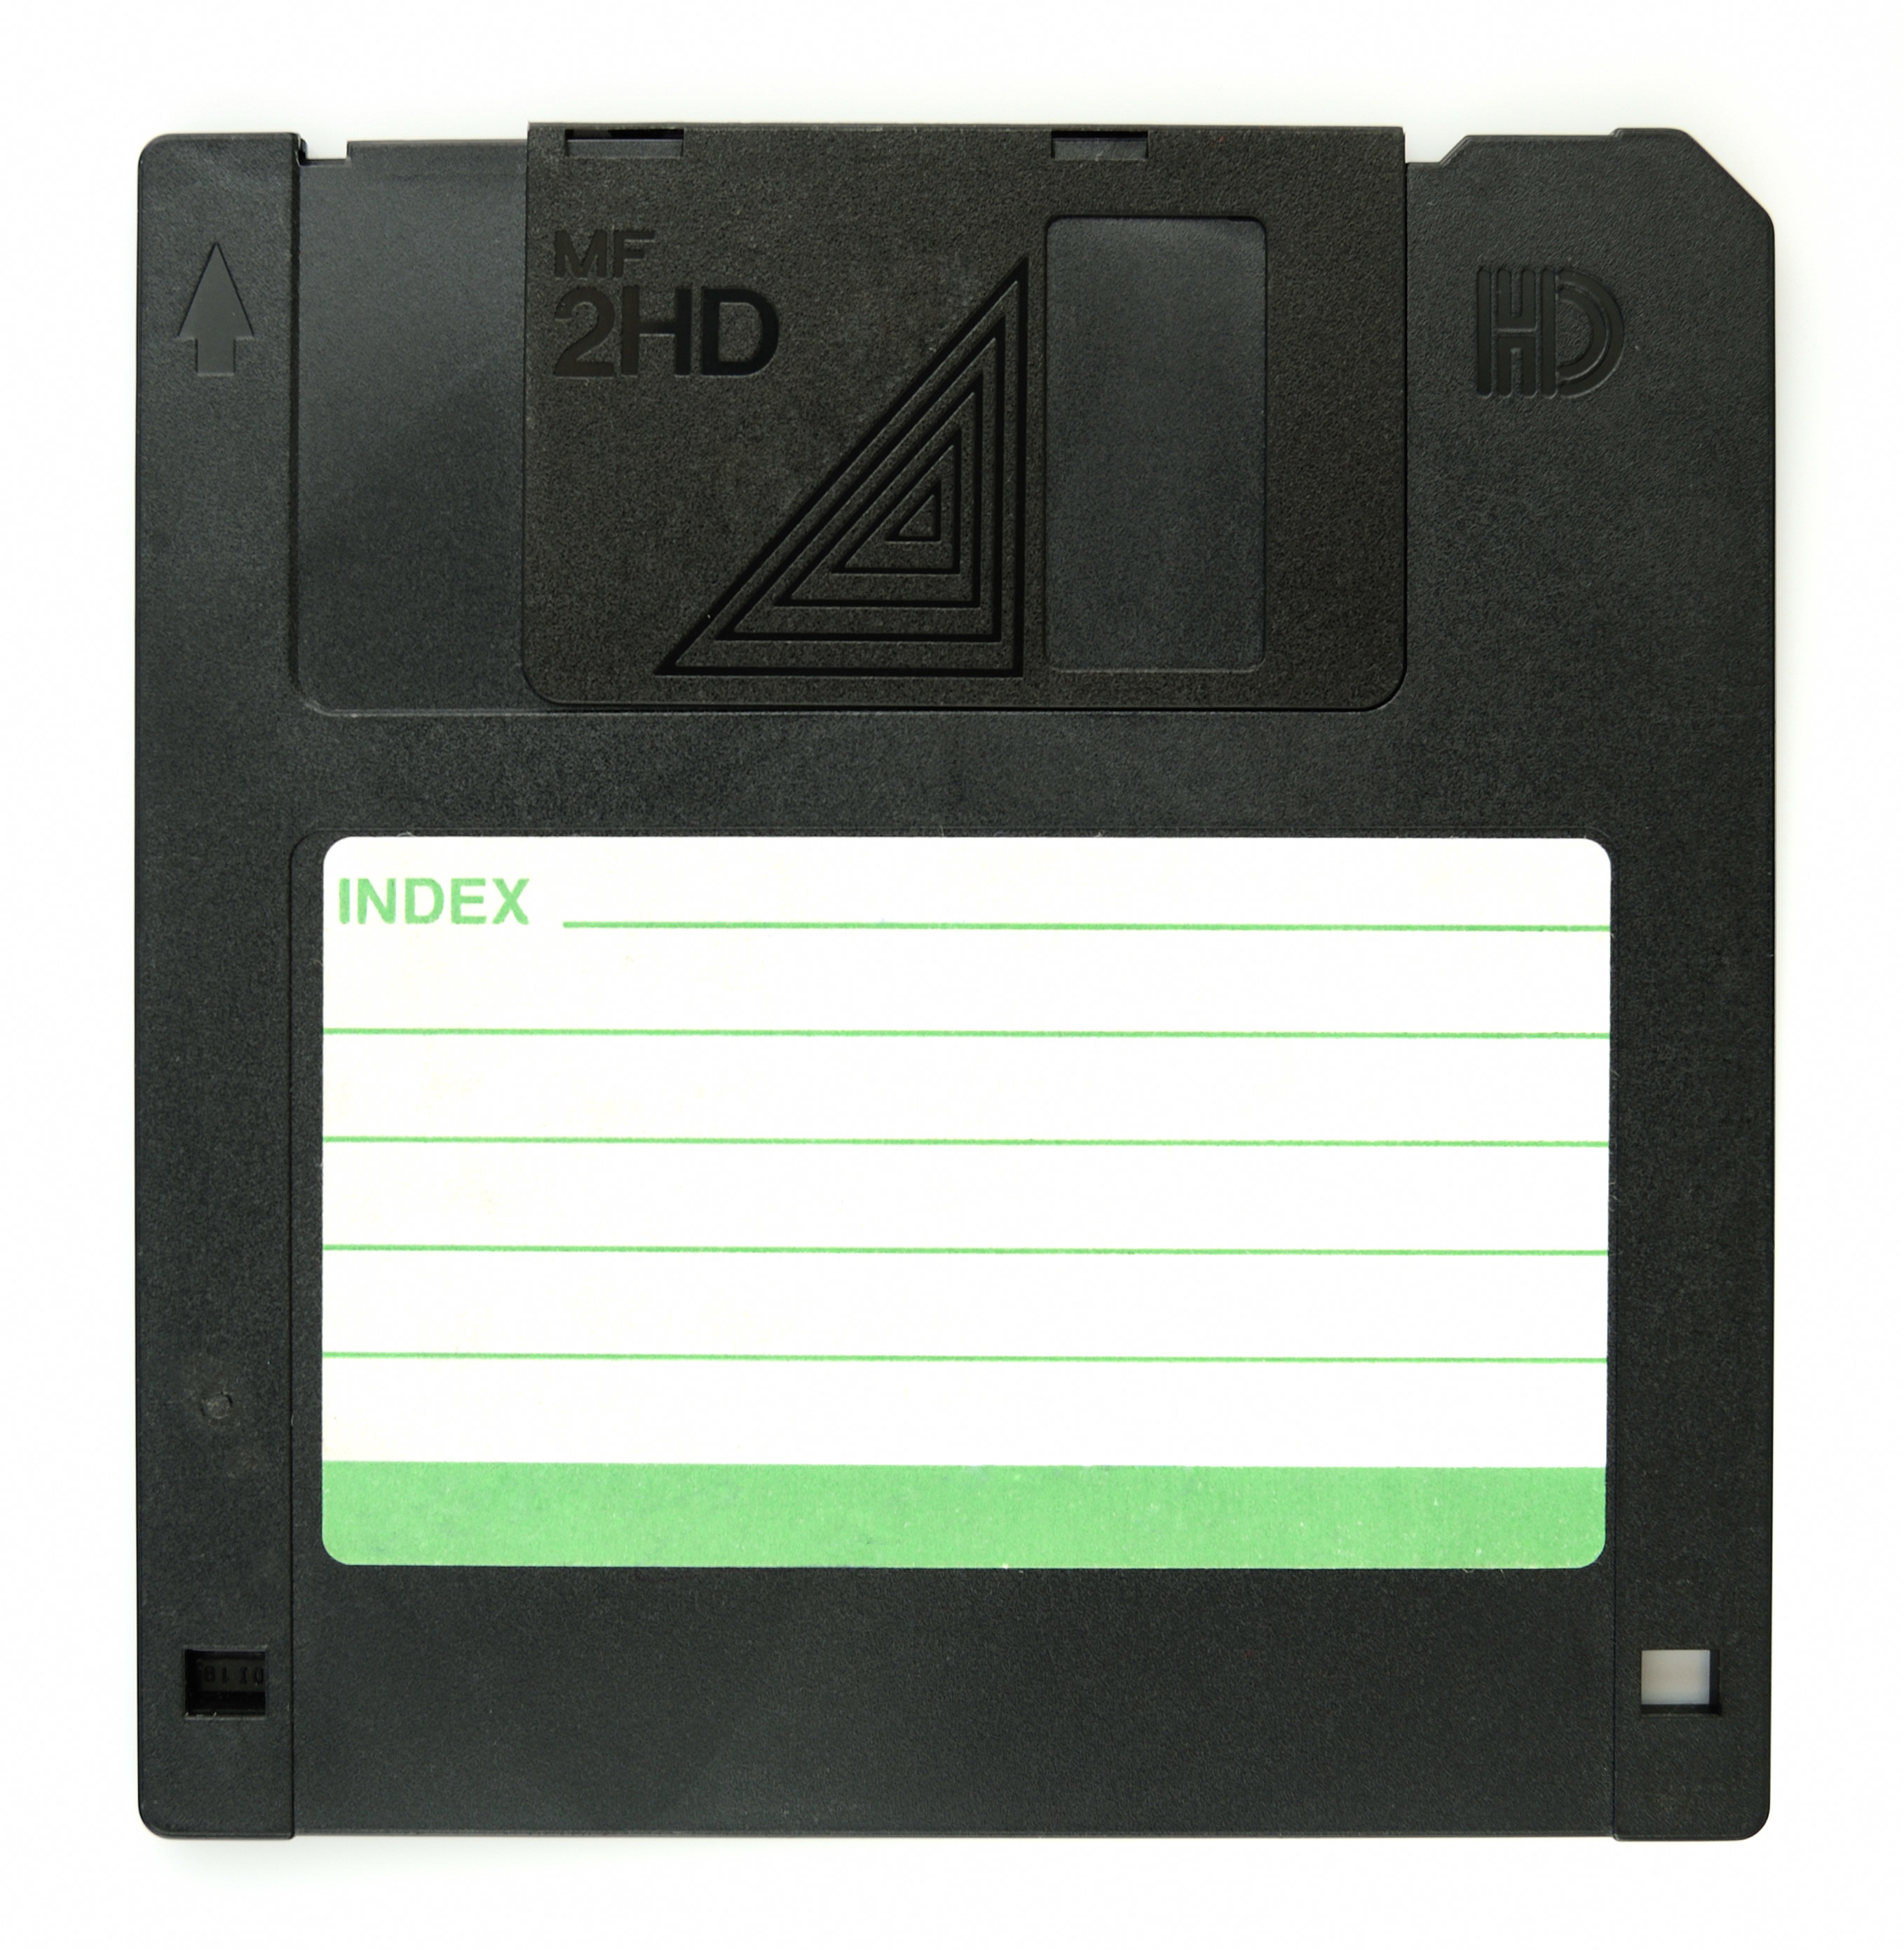 single floppy disk